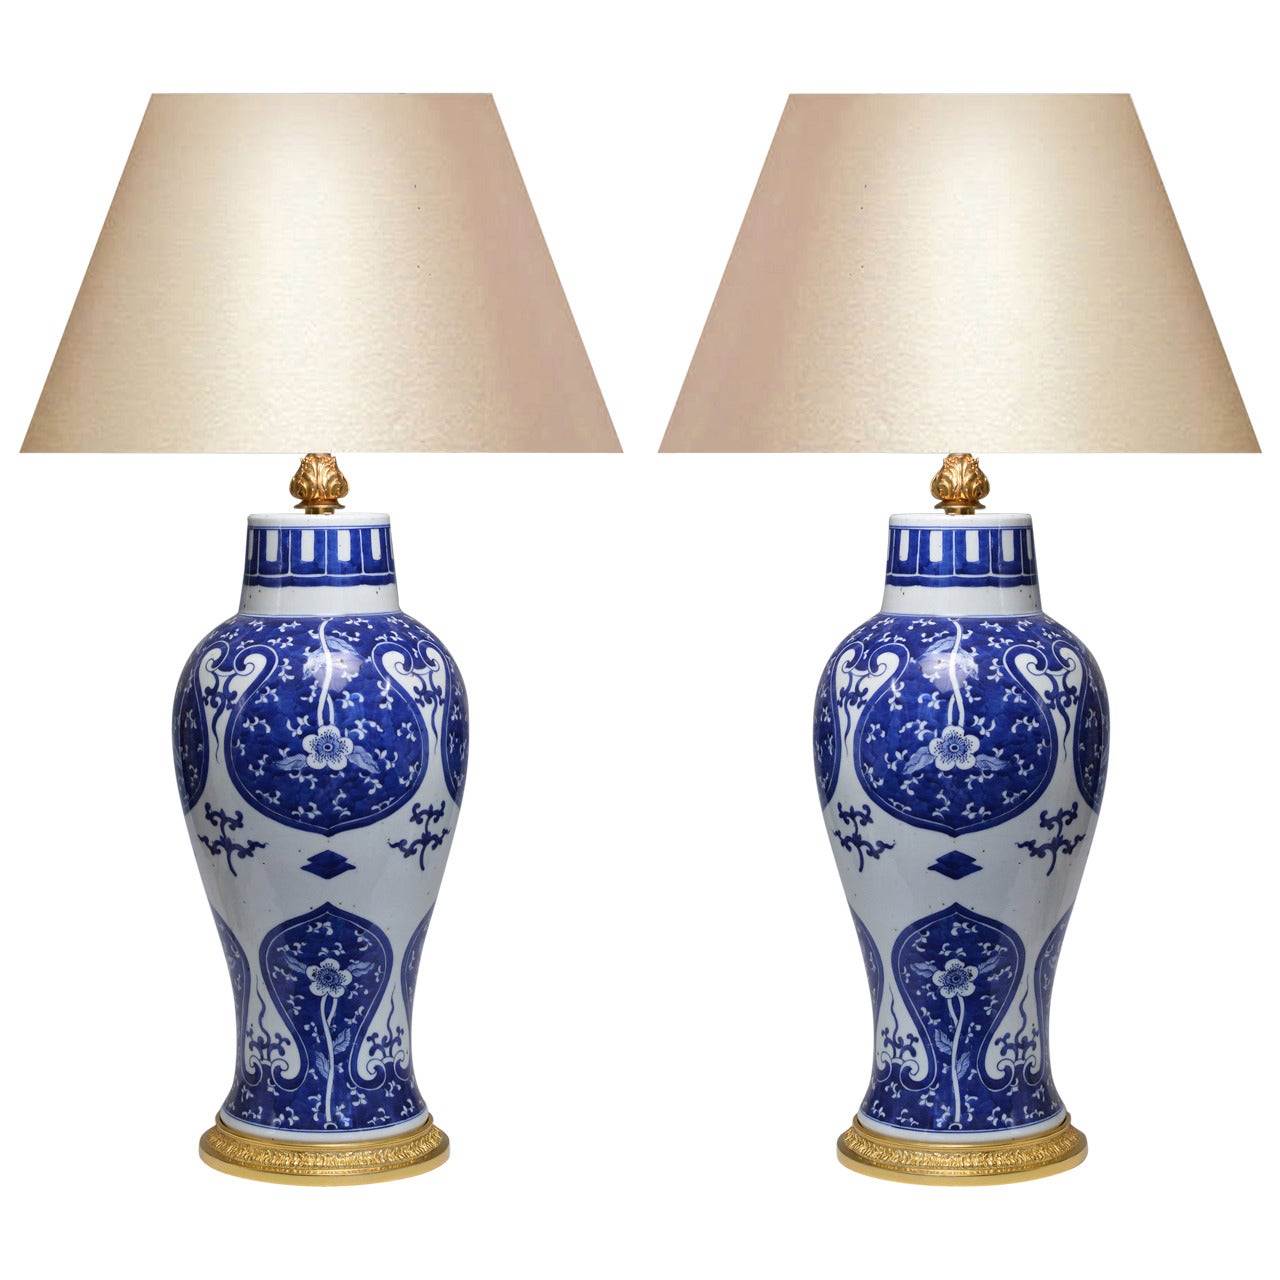 Paar blaue und weiße Porzellanlampen